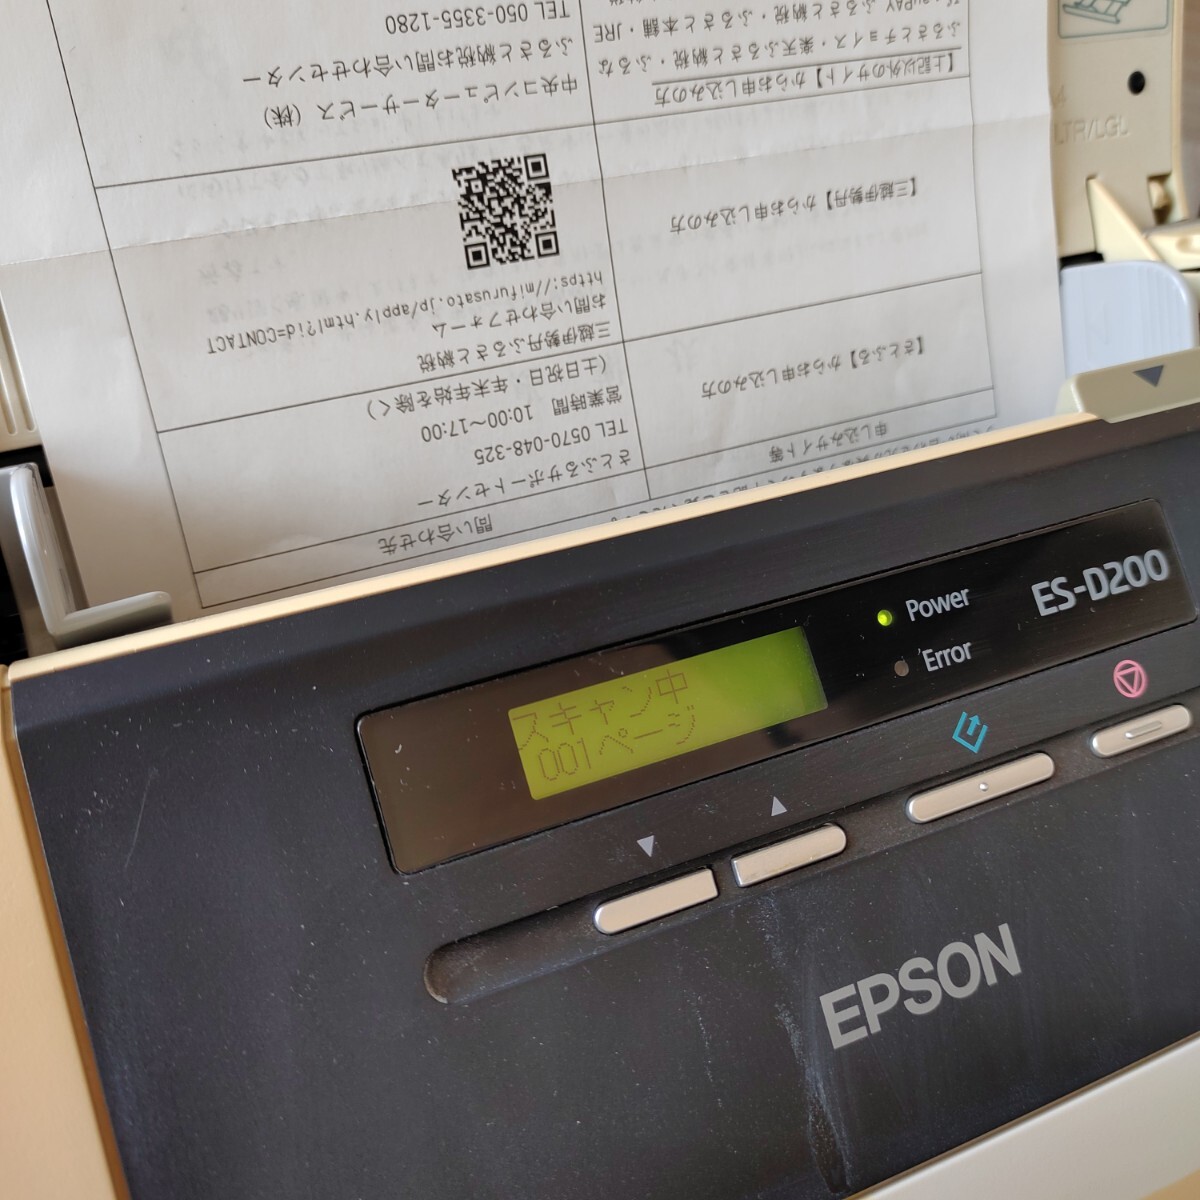 [ для бизнеса ]EPSON* сканер документов ES-D200 двусторонний одновременно считывание брать . продолжение считывание Epson USB кабель есть дешевый офис 